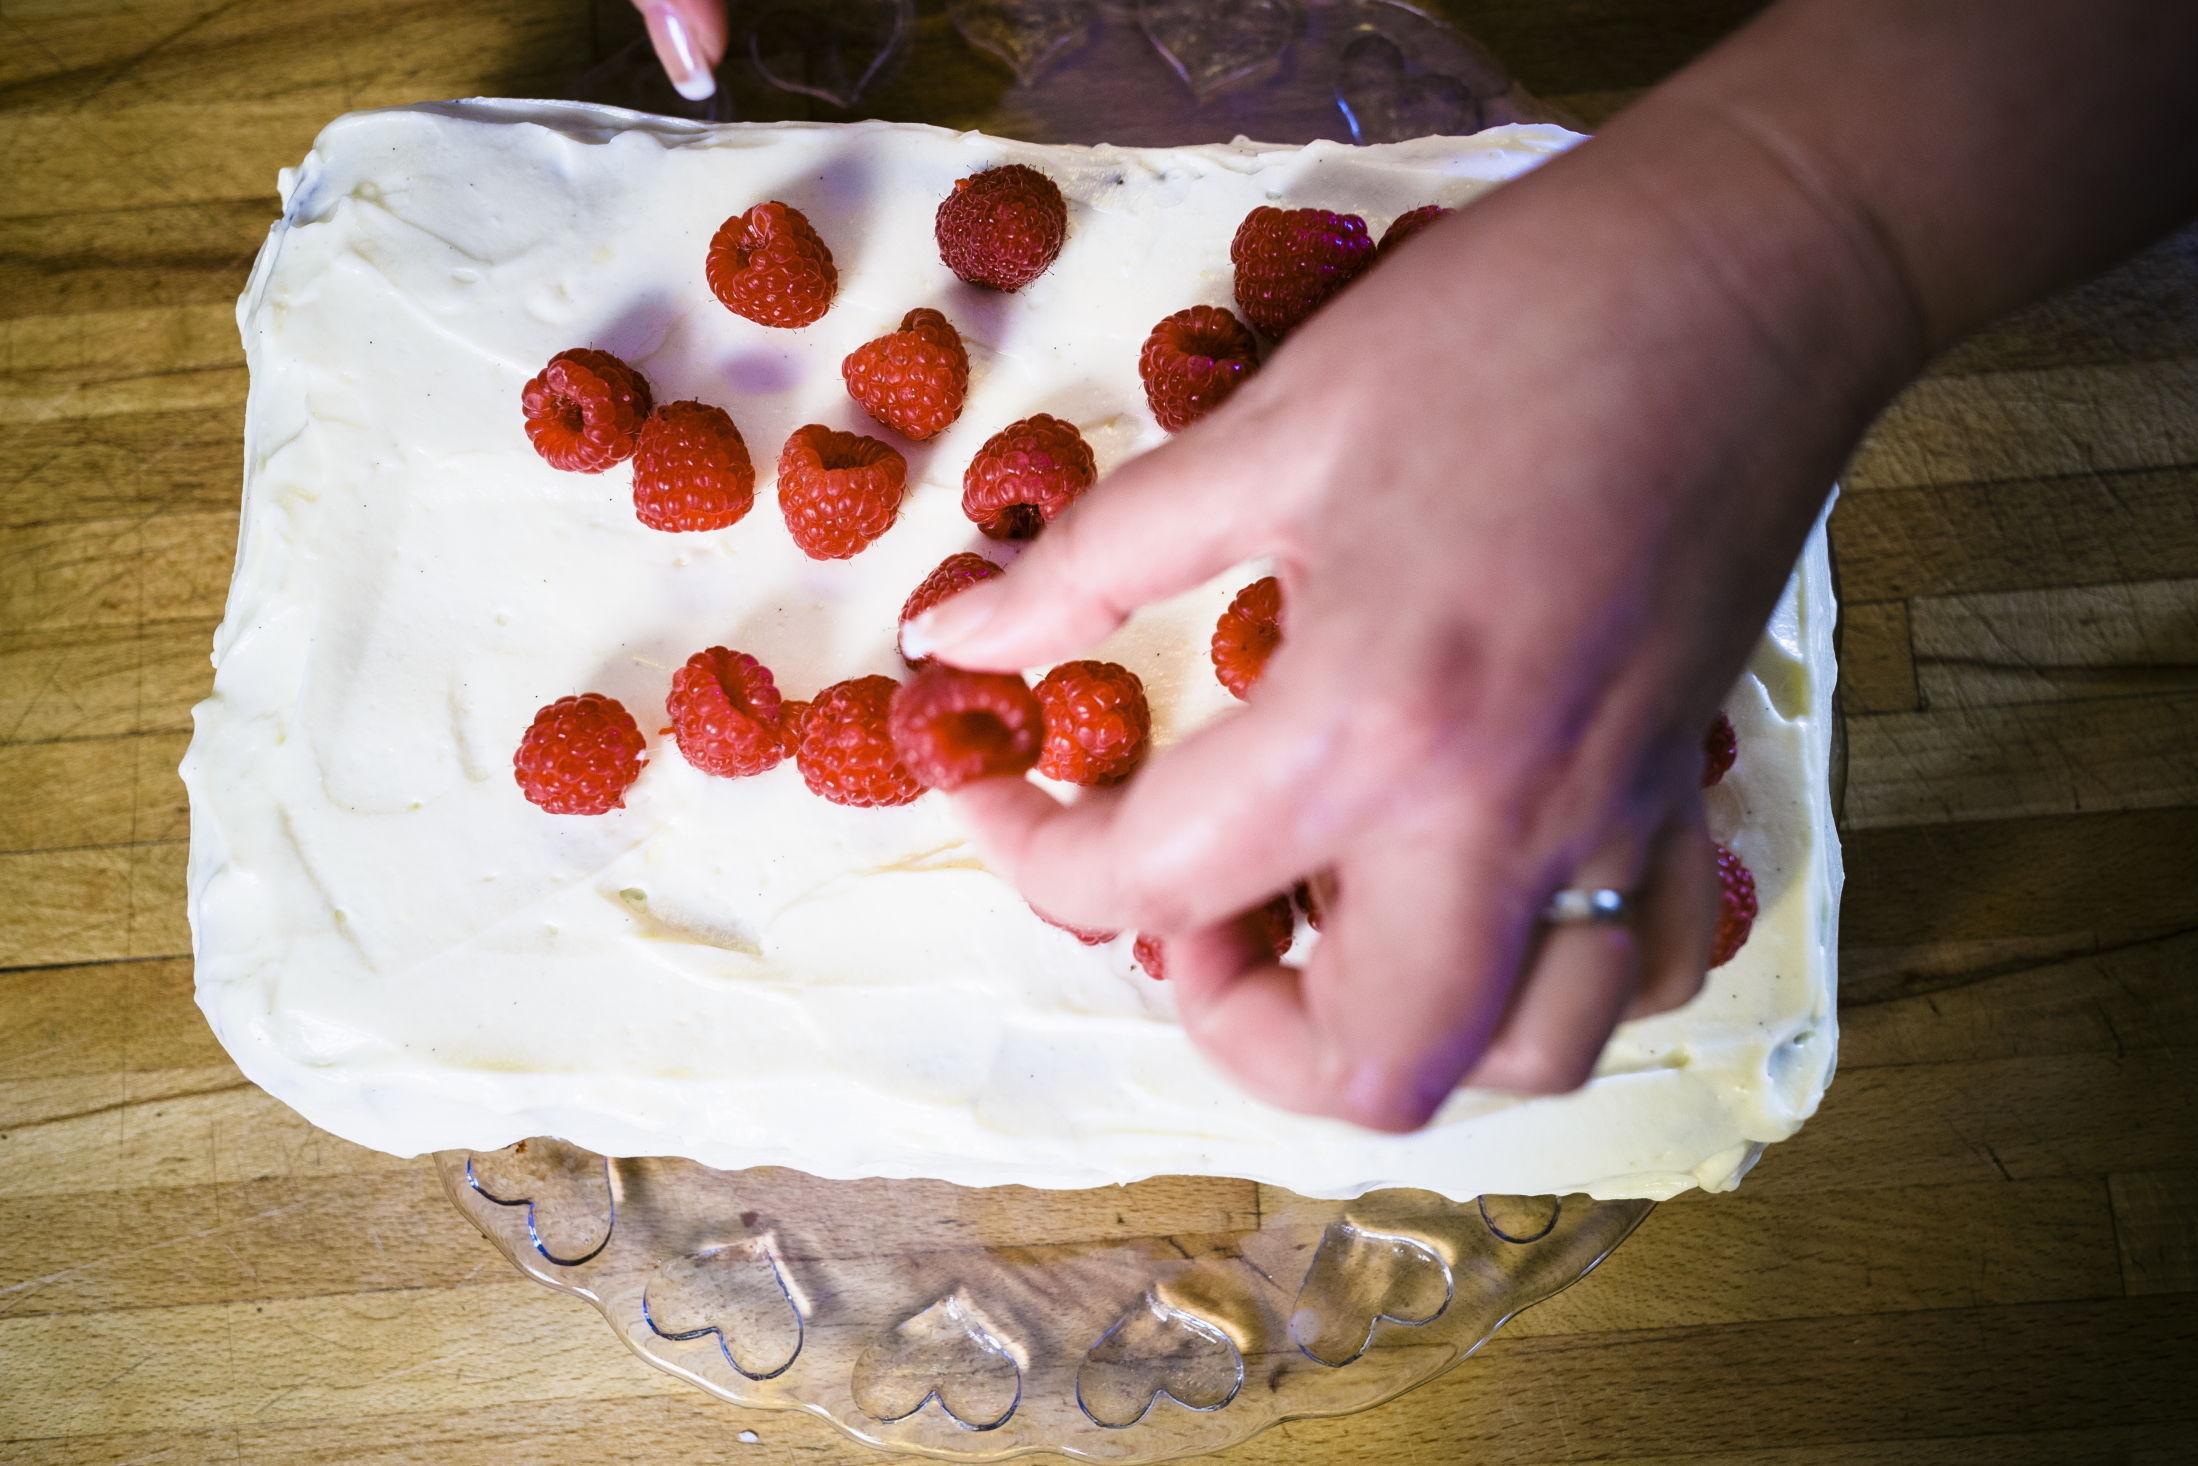 SAFTIG: En av de mest populære oppskriftene på «Det søte liv» er denne enkle gulrotkaken med ostekrem, som kan pyntes opp med bær for en frisk vri. Foto: Krister Sørbø/VG